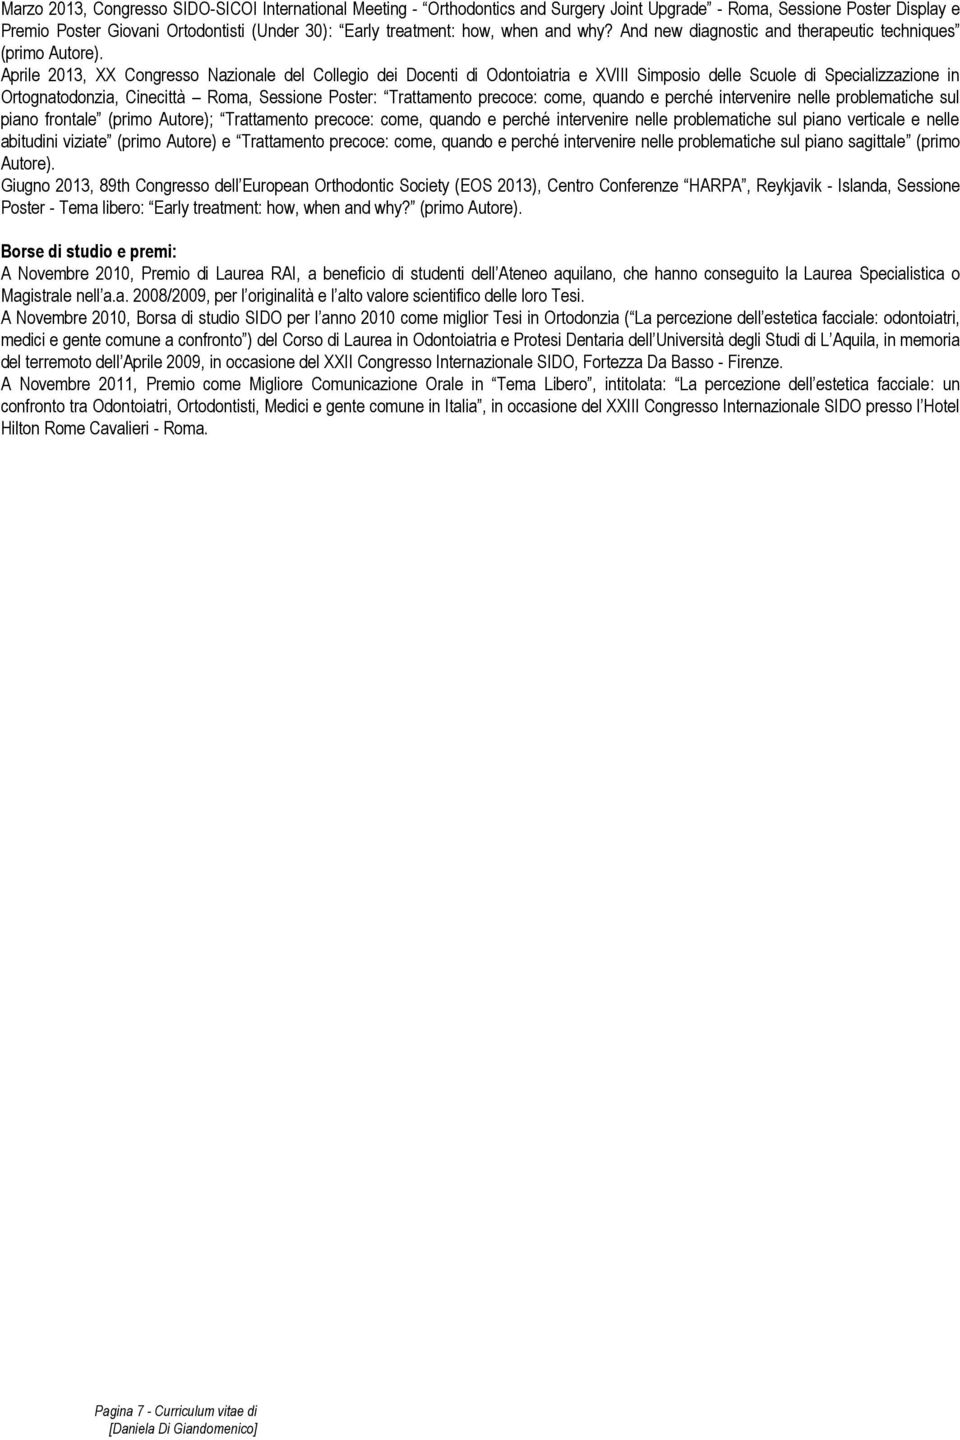 Aprile 2013, XX Congresso Nazionale del Collegio dei Docenti di Odontoiatria e XVIII Simposio delle Scuole di Specializzazione in Ortognatodonzia, Cinecittà Roma, Sessione Poster: Trattamento